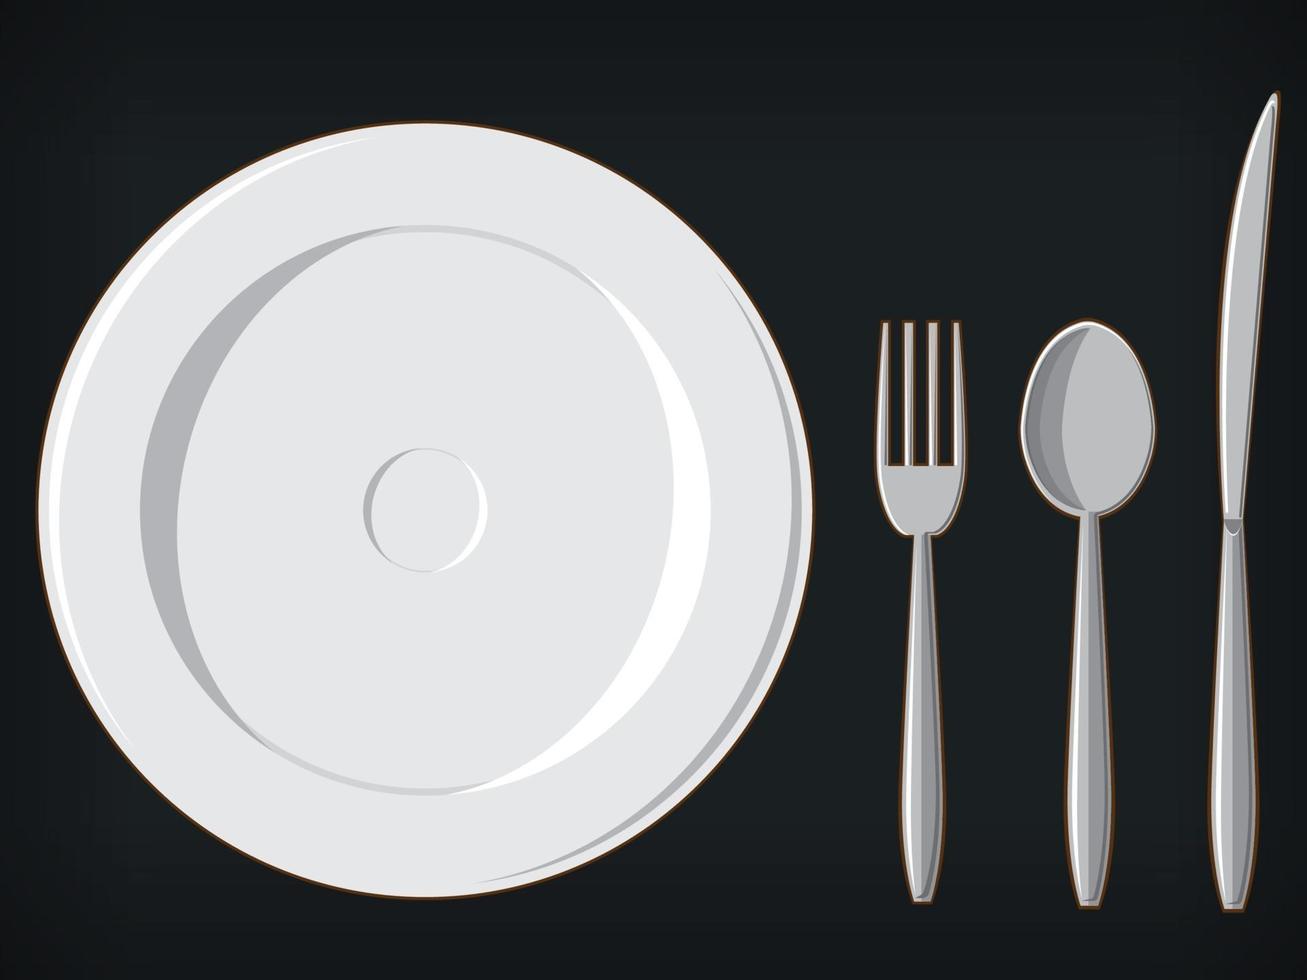 Banquete jantar formal utensílios prato garfo colher faca ilustração vetor